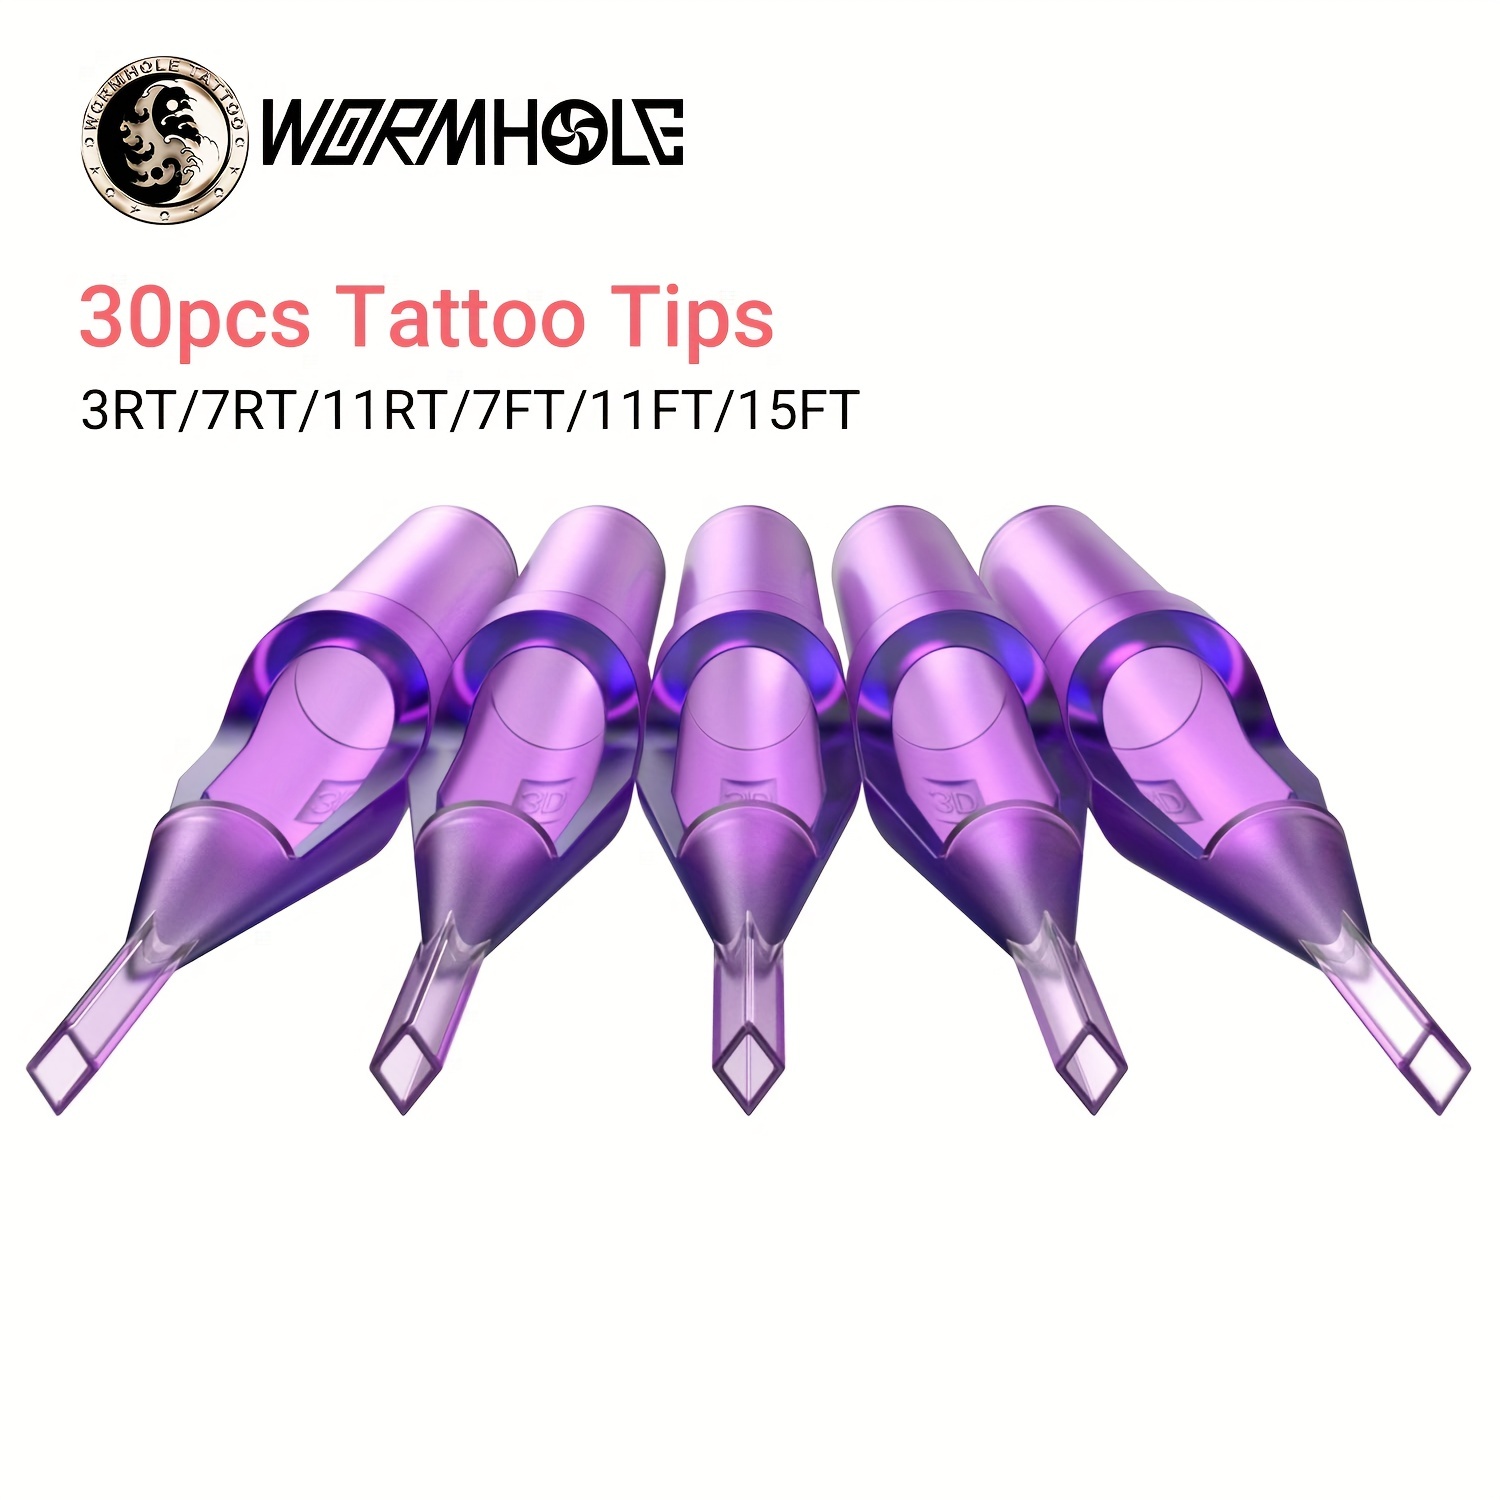 Cartuchos de Agujas de Tatuaje 20Pcs de Wormhole Tattoo